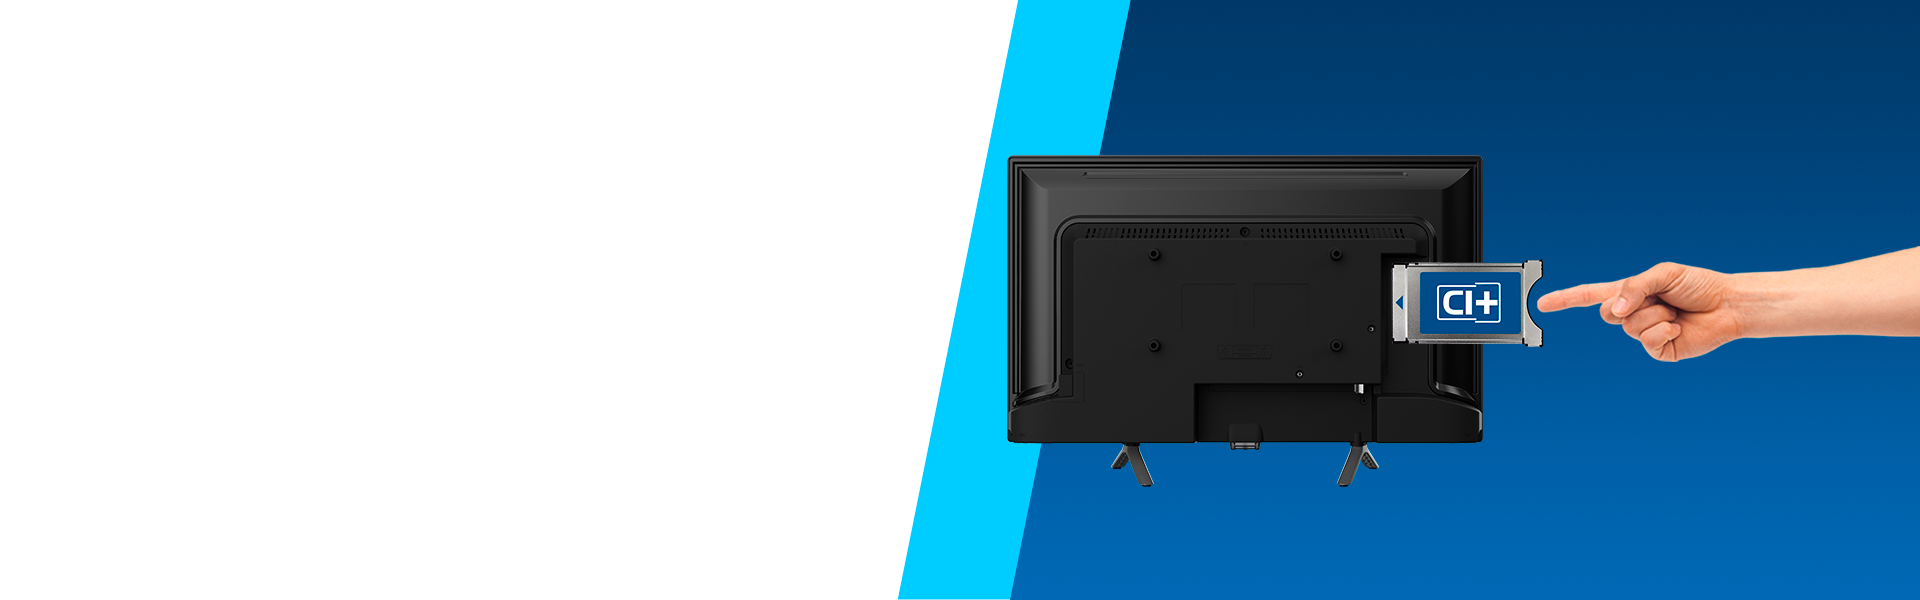 Телевизор HD-Ready Smart TV LED Blaupunkt 32HB5000